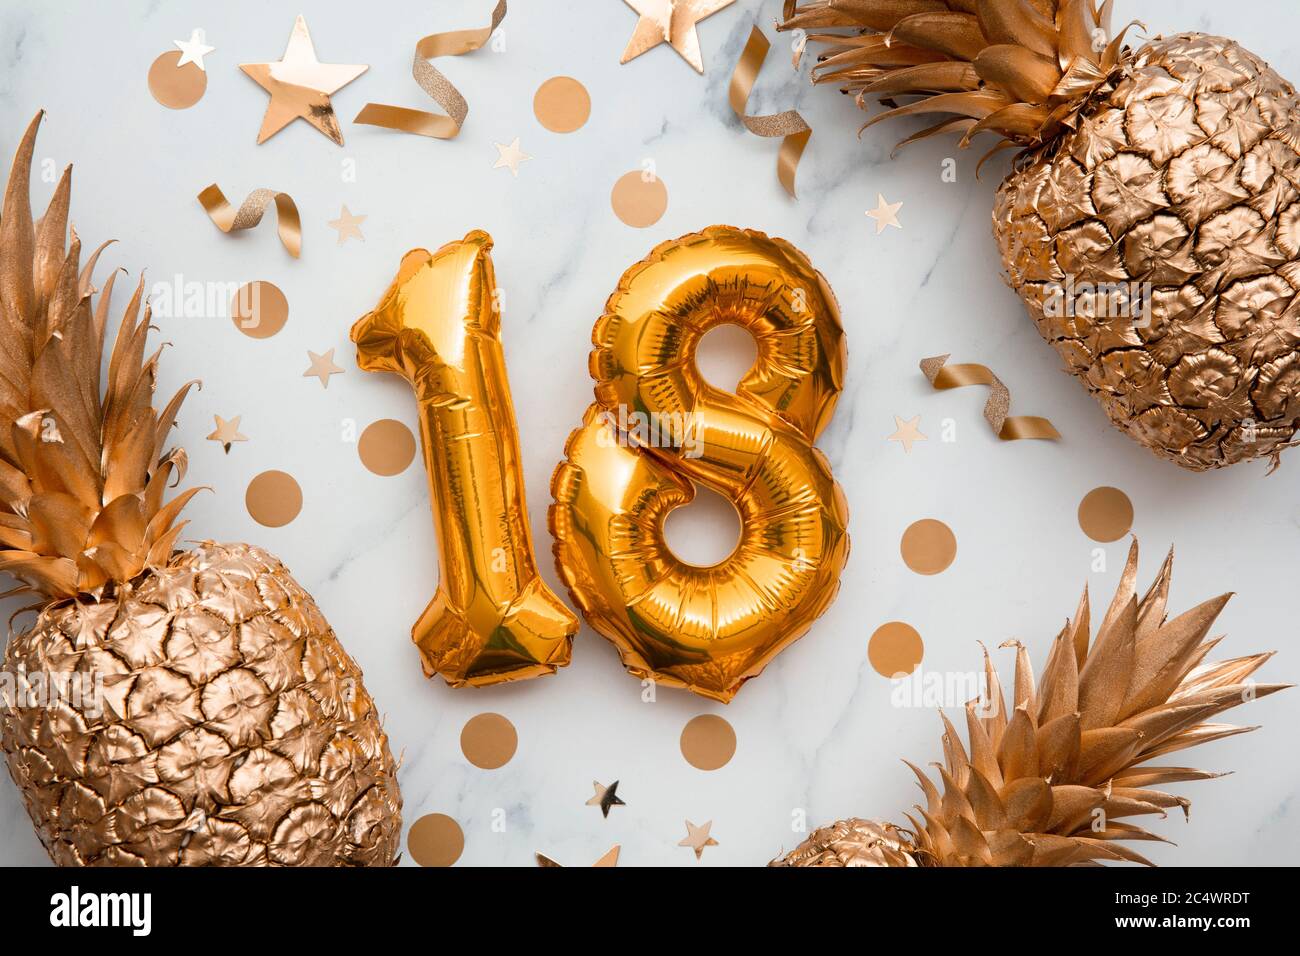 18 cumpleaños globos Fotografía de stock - Alamy